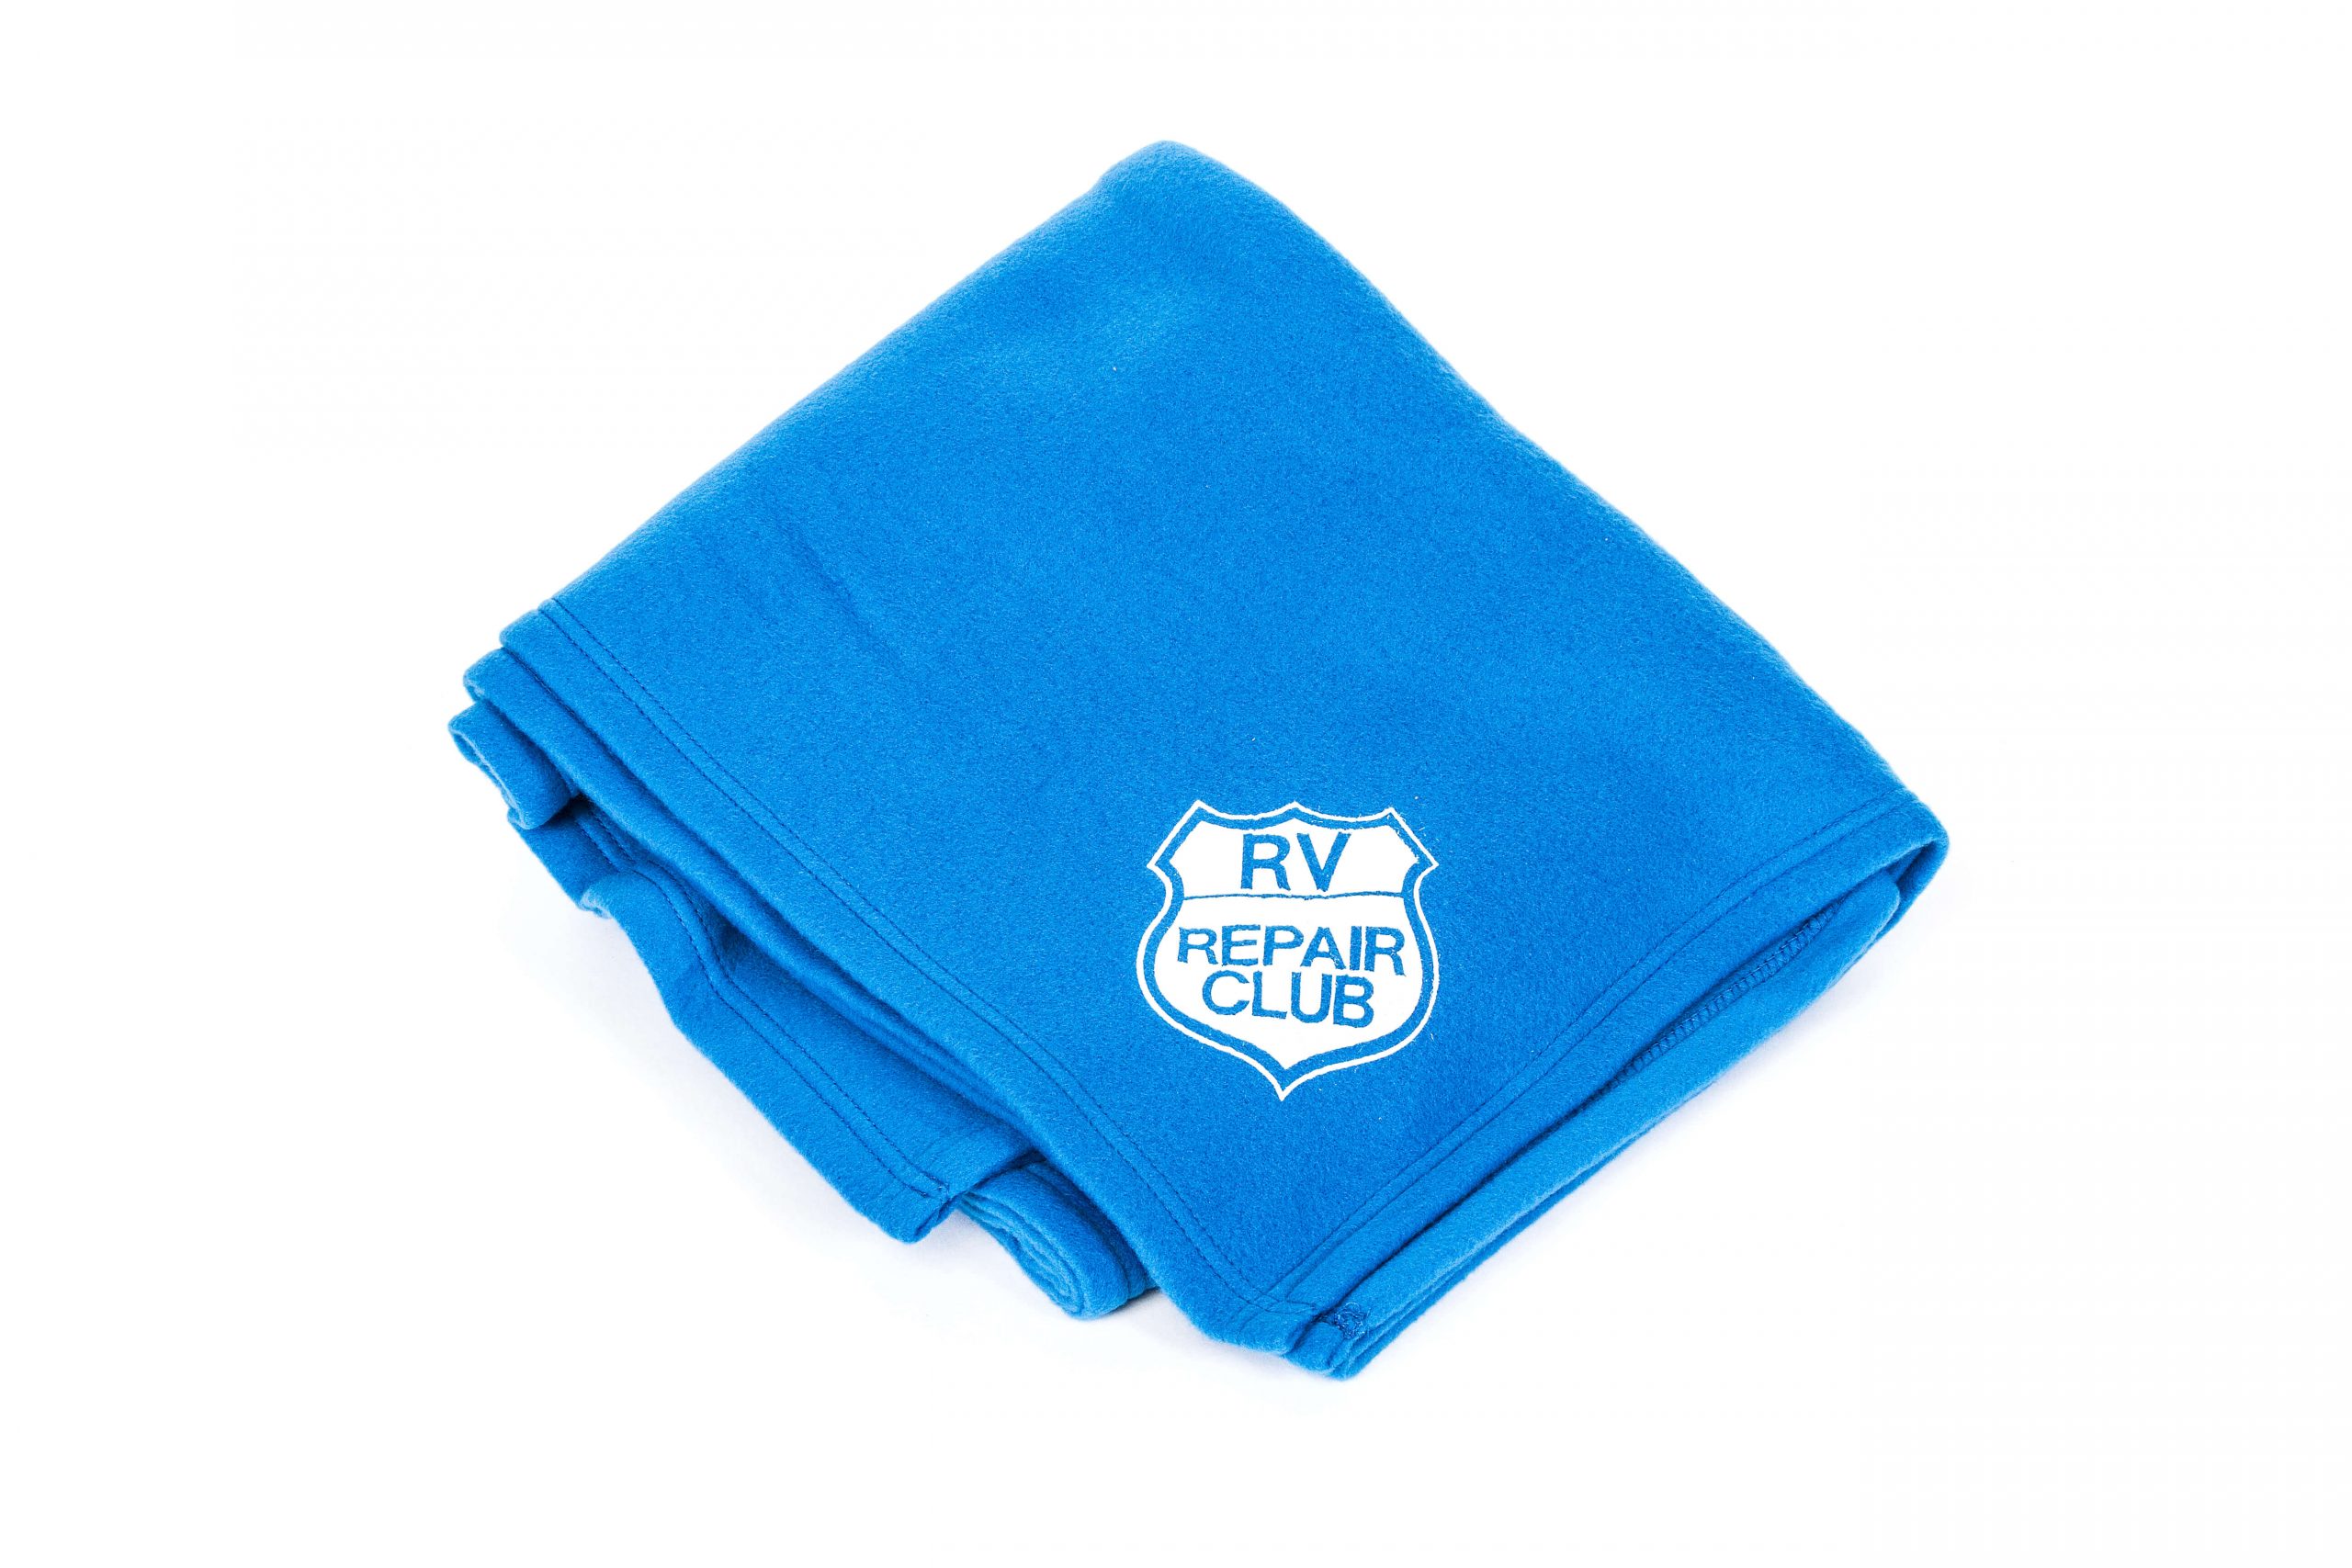 RV Repair Club Logo on a folded blue blanket